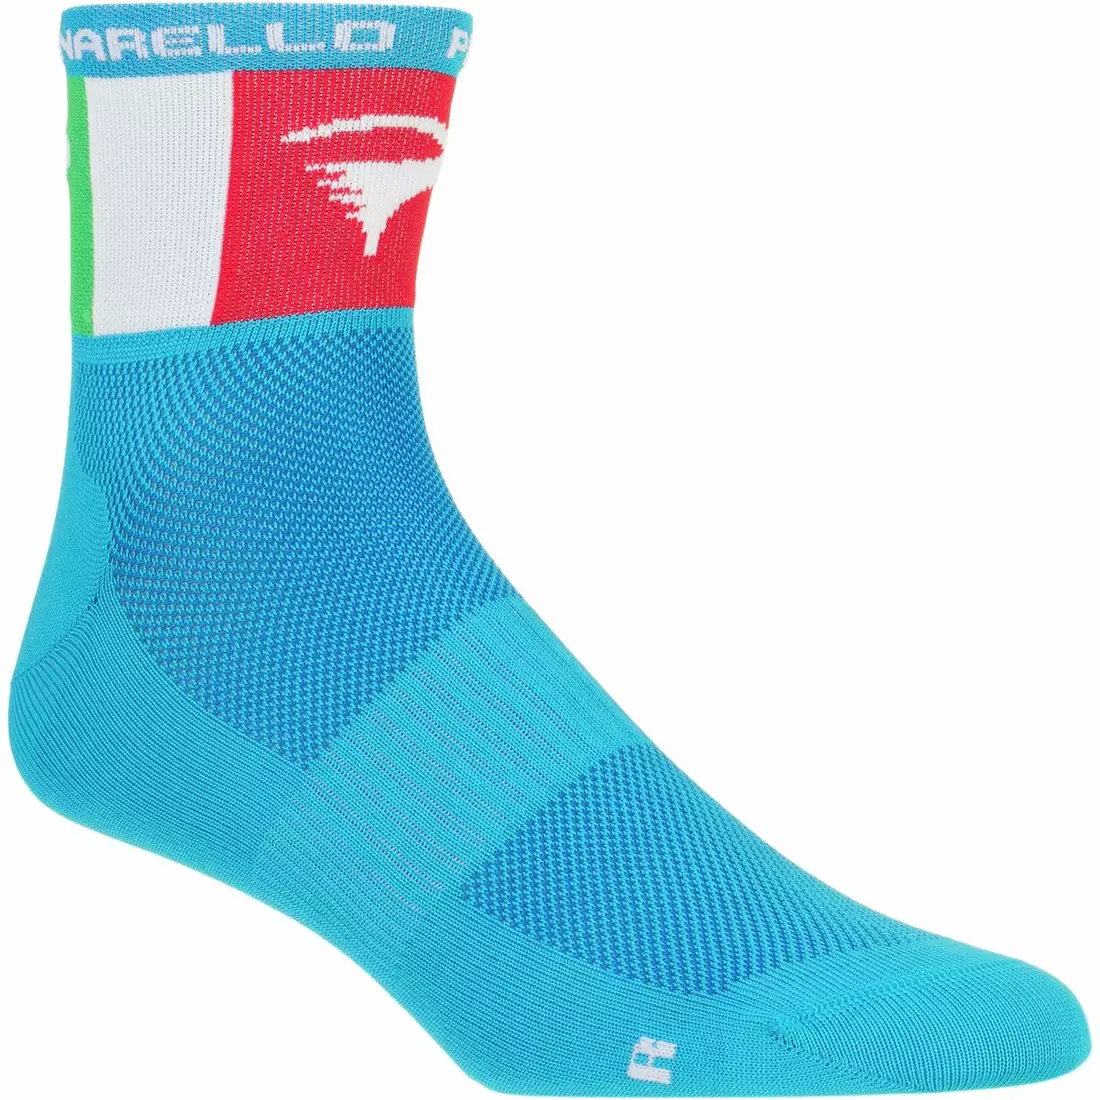 PINARELLO blaue Socken/Italia